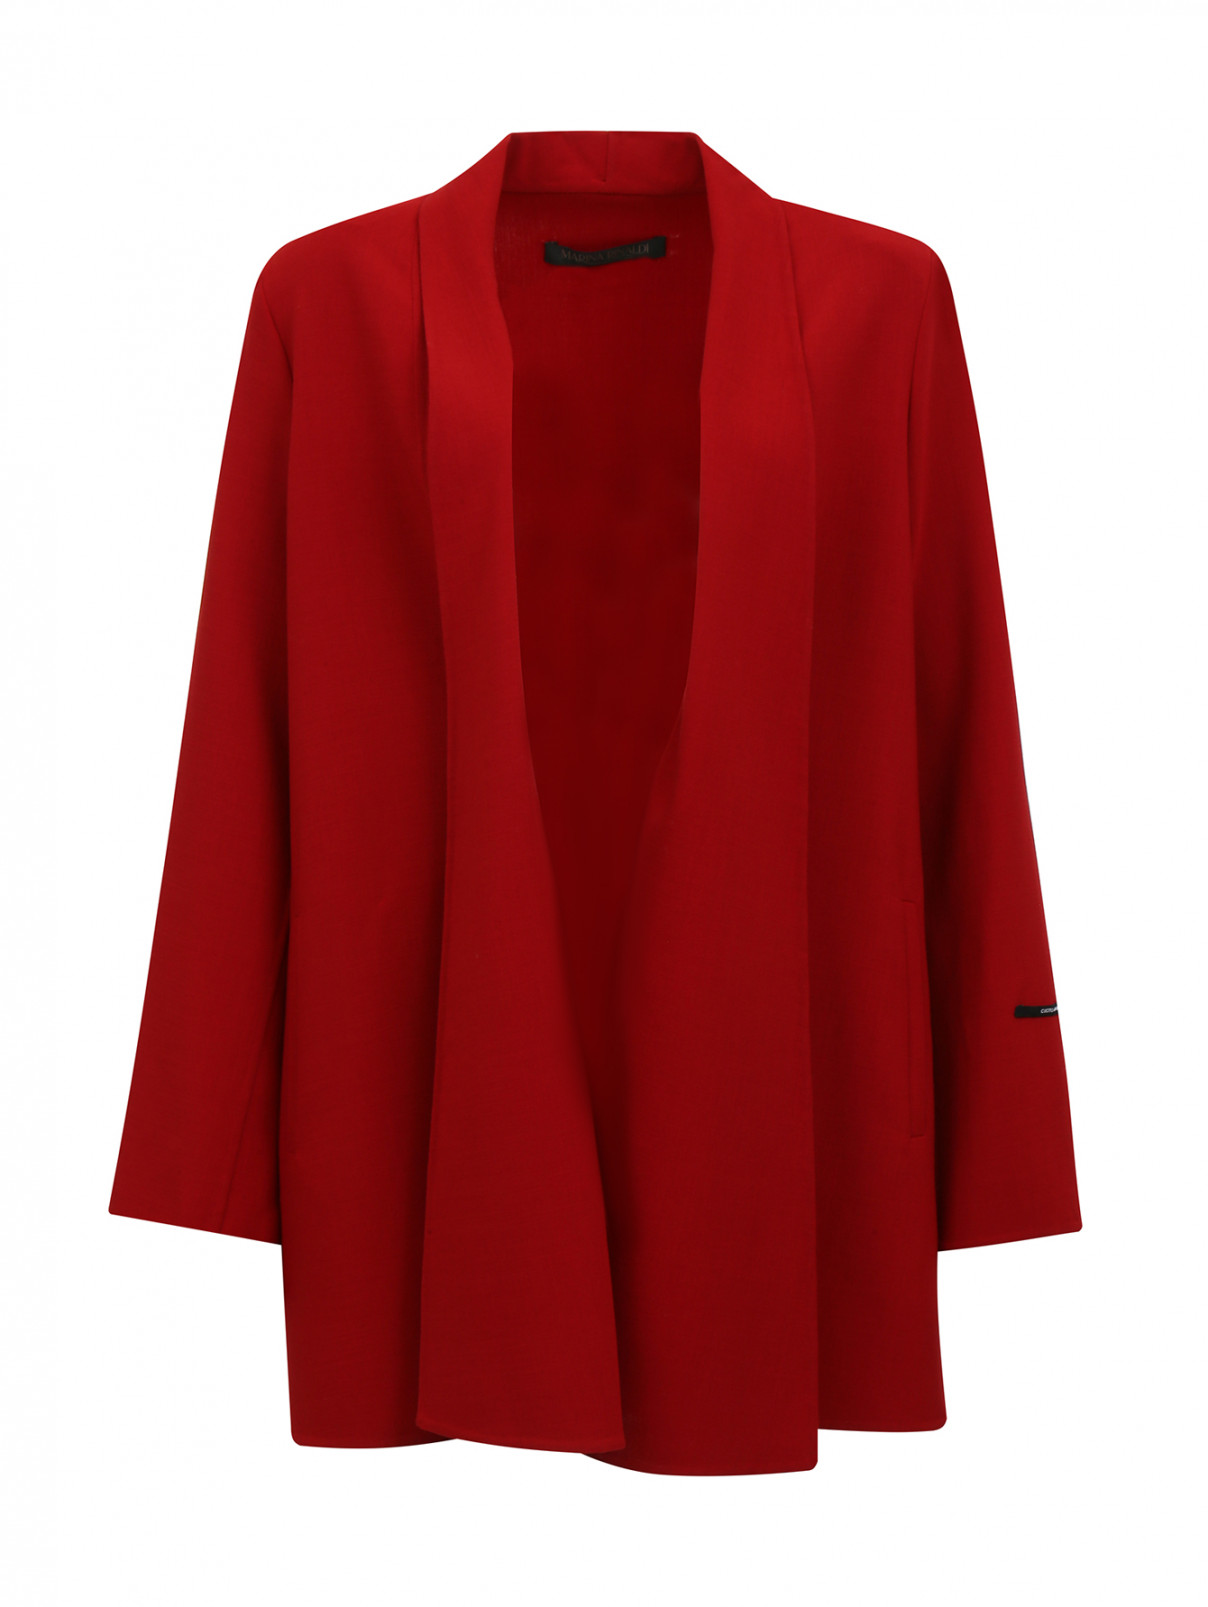 Удлиненный жакет из шерсти Marina Rinaldi  –  Общий вид  – Цвет:  Красный